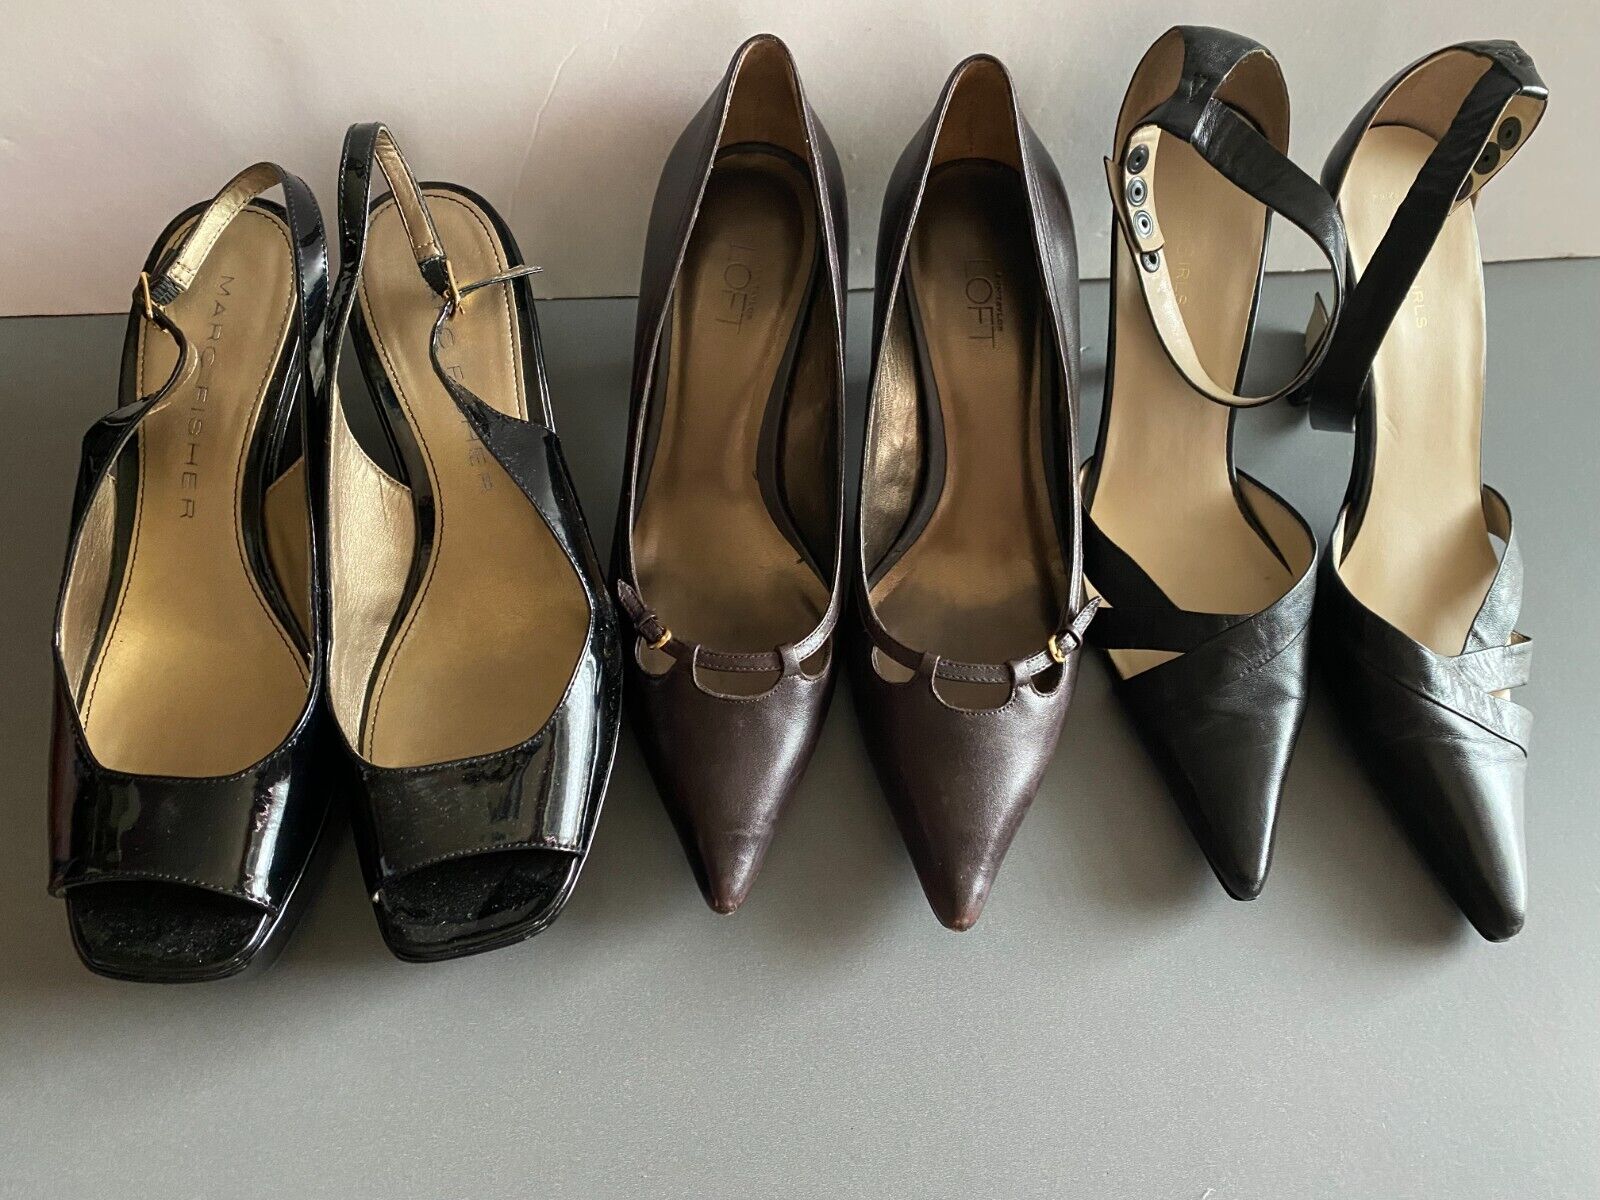 3 Pairs LOFT BCBG MARC Assorted Womens Pump Heels Shoes Lot Sz 8 - 8.5 Vintage